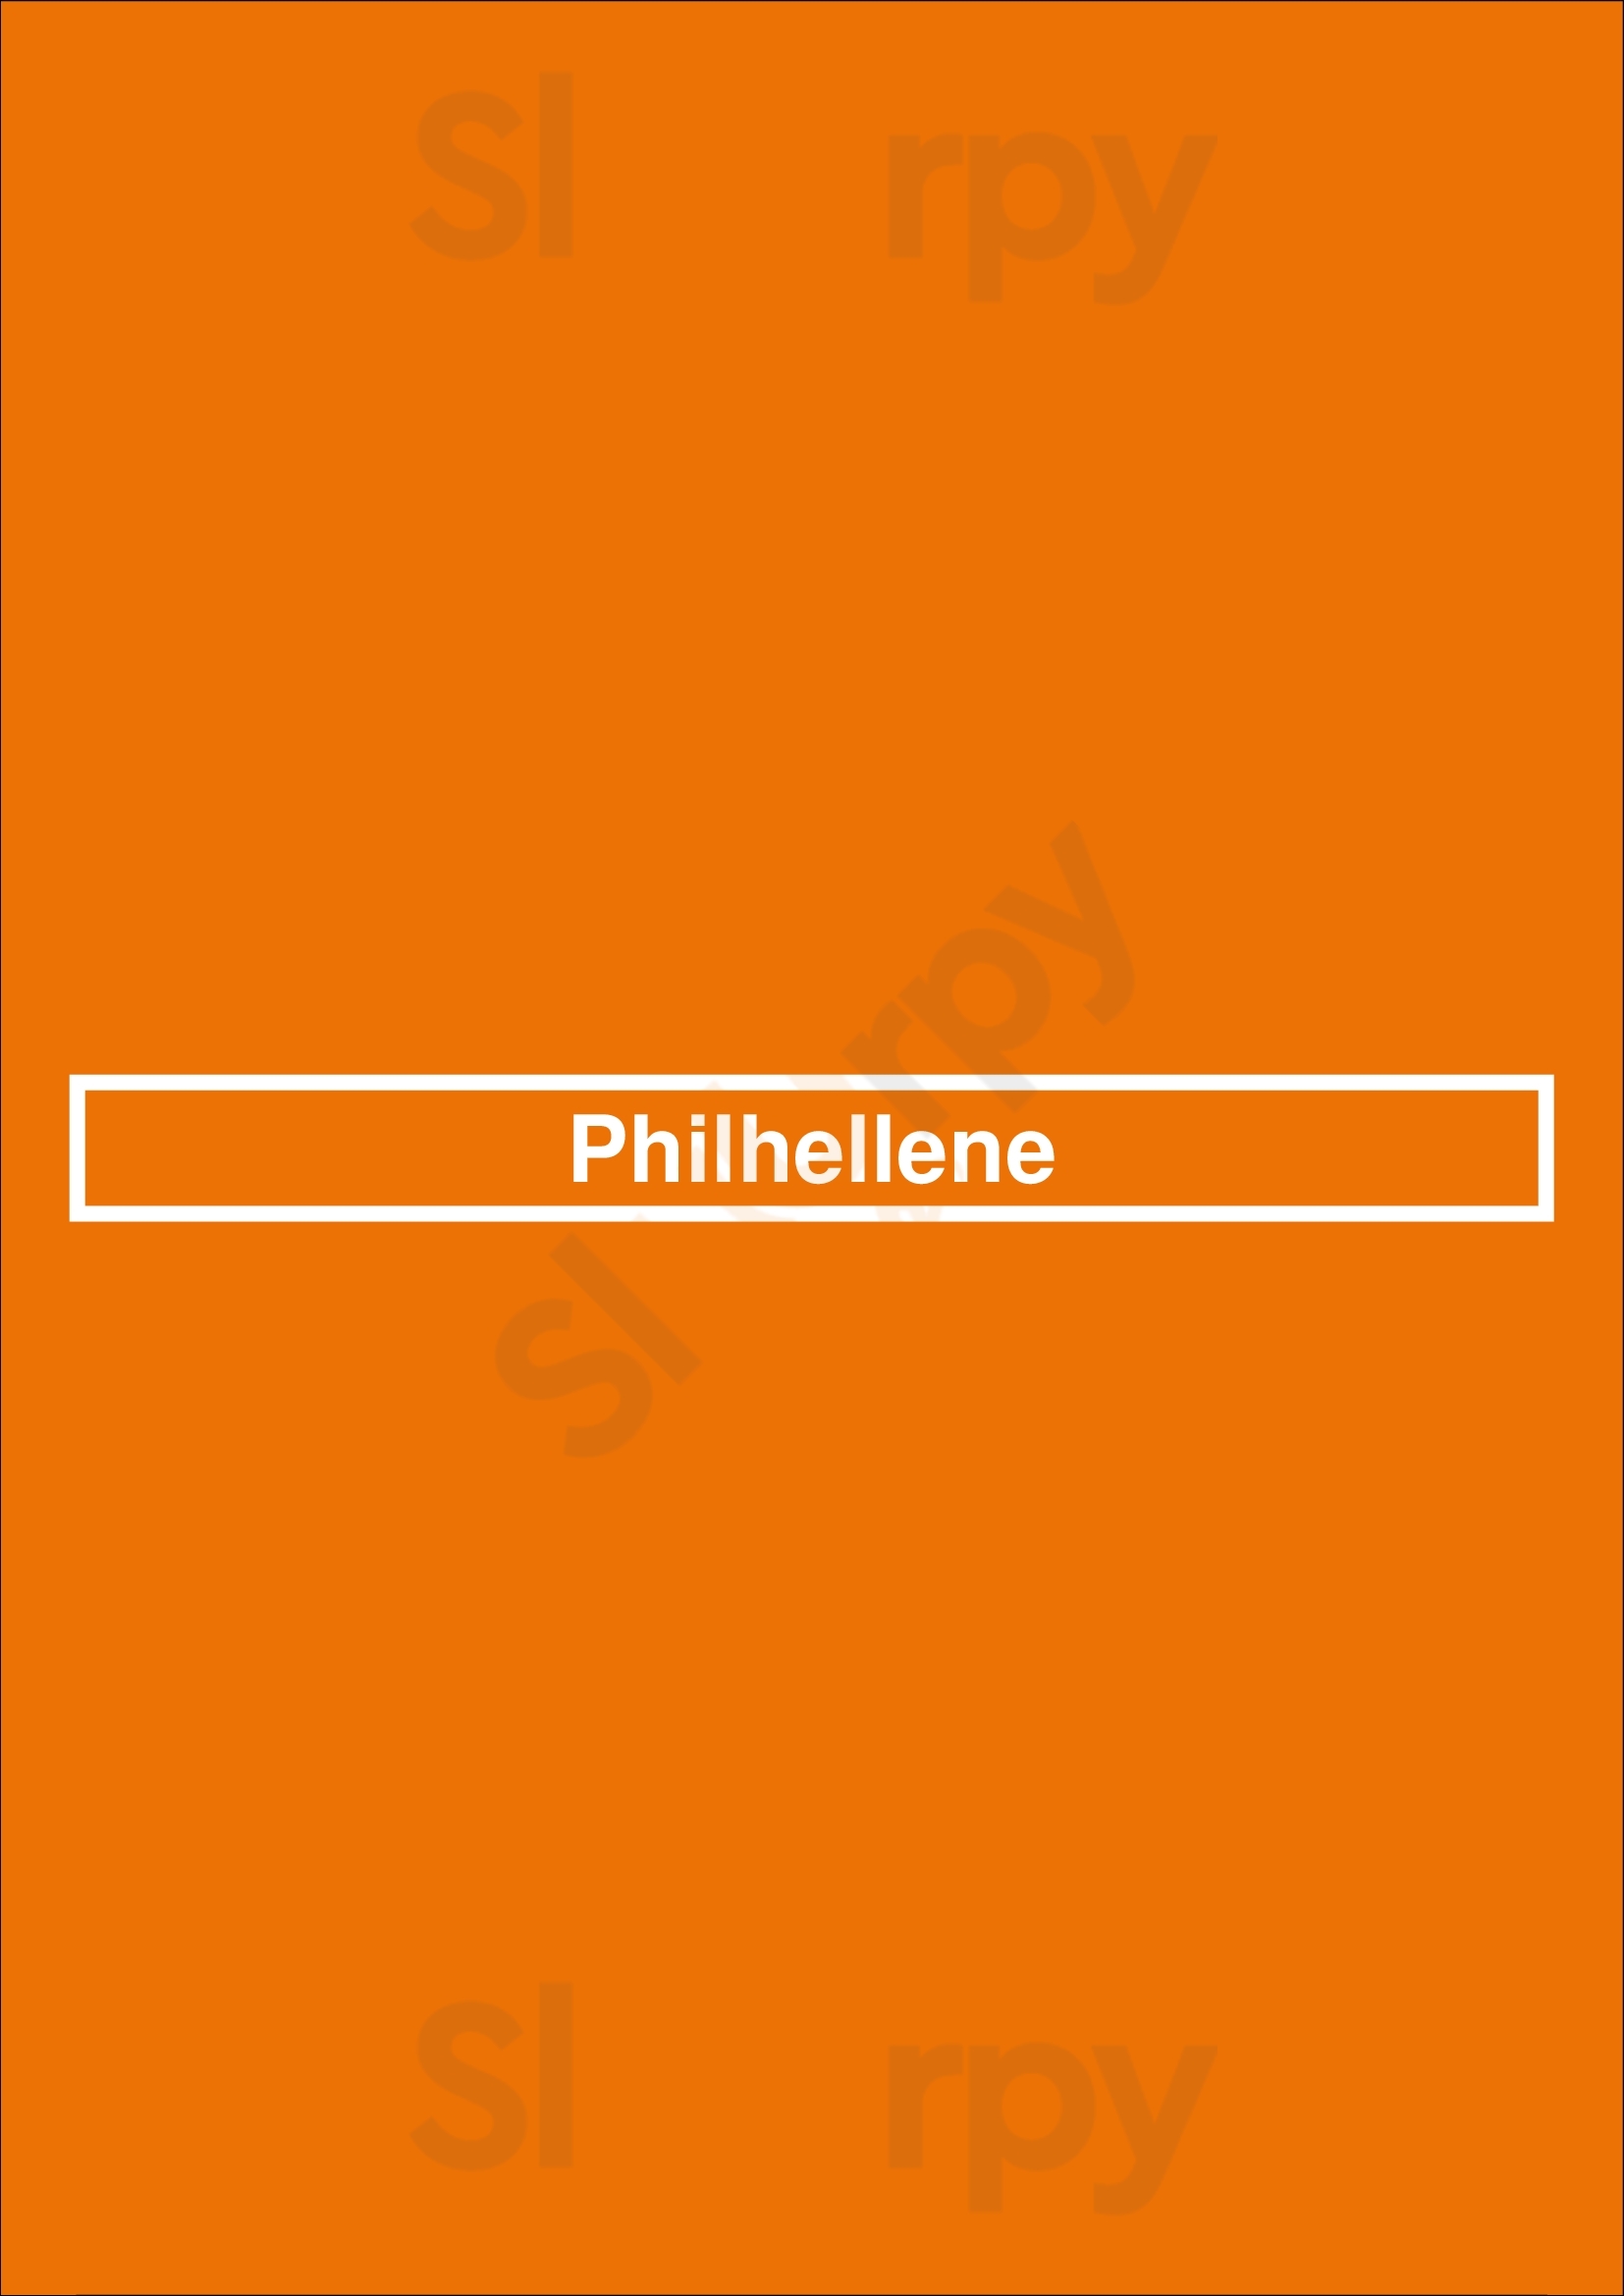 Philhellene Moonee Ponds Menu - 1